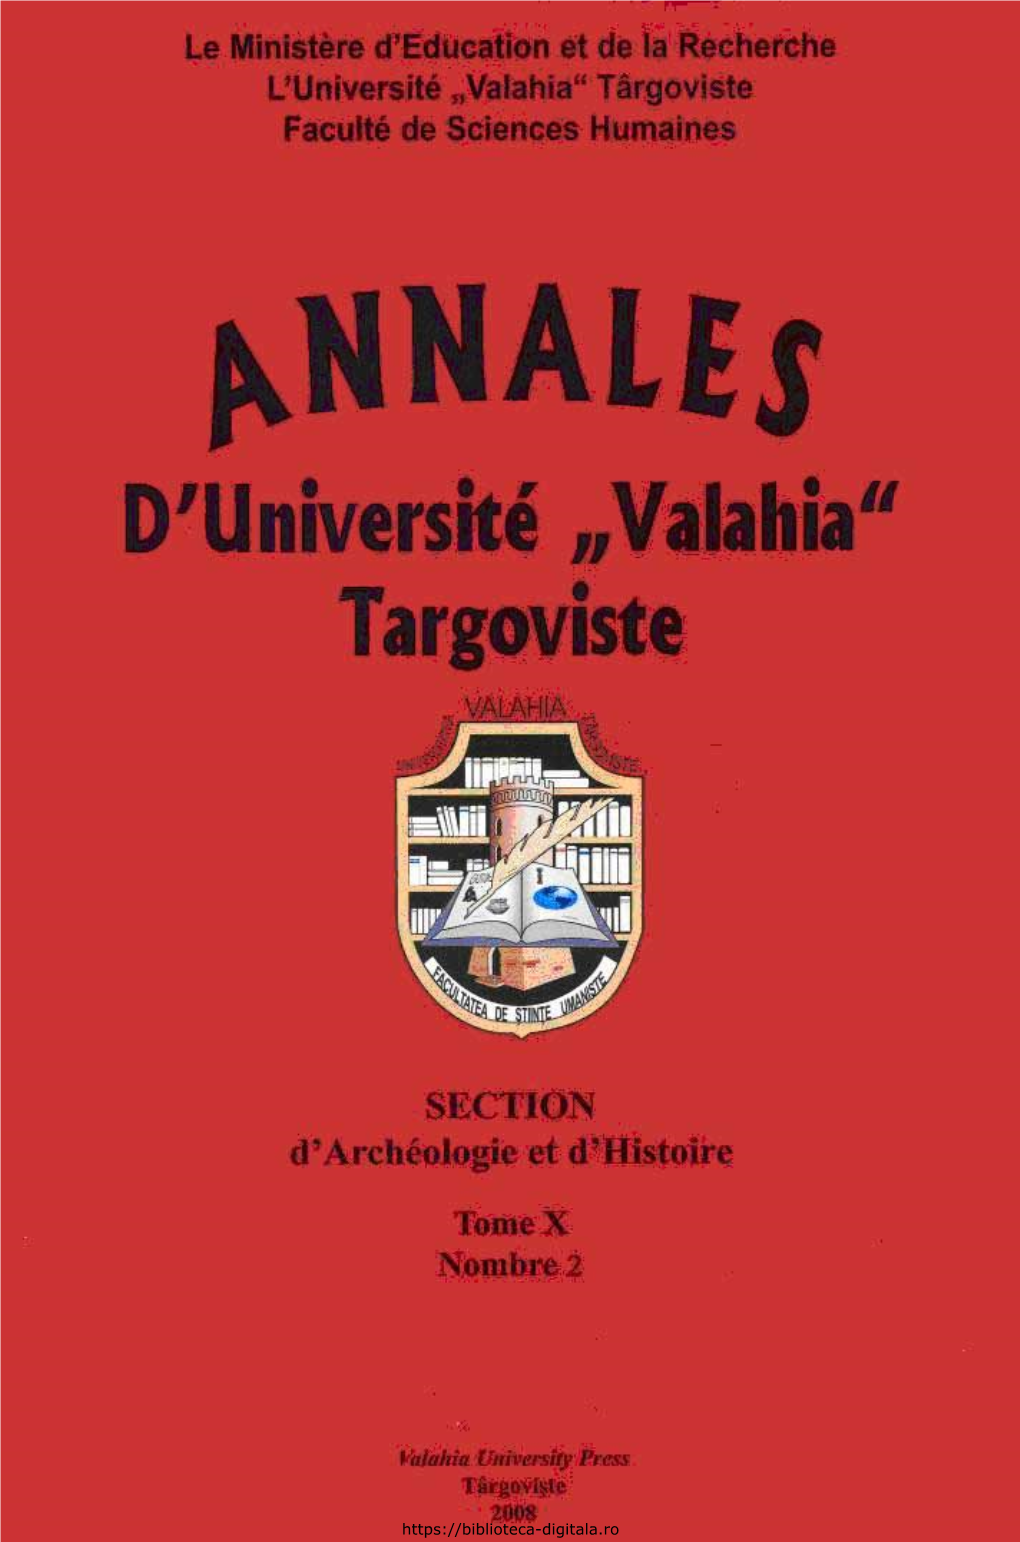 Annales D’Université “Valahia” Târgovi2te, Section D’Archéologie Et D’Histoire, Tome X, Nombre 2, 2008, ISSN 1584-1855